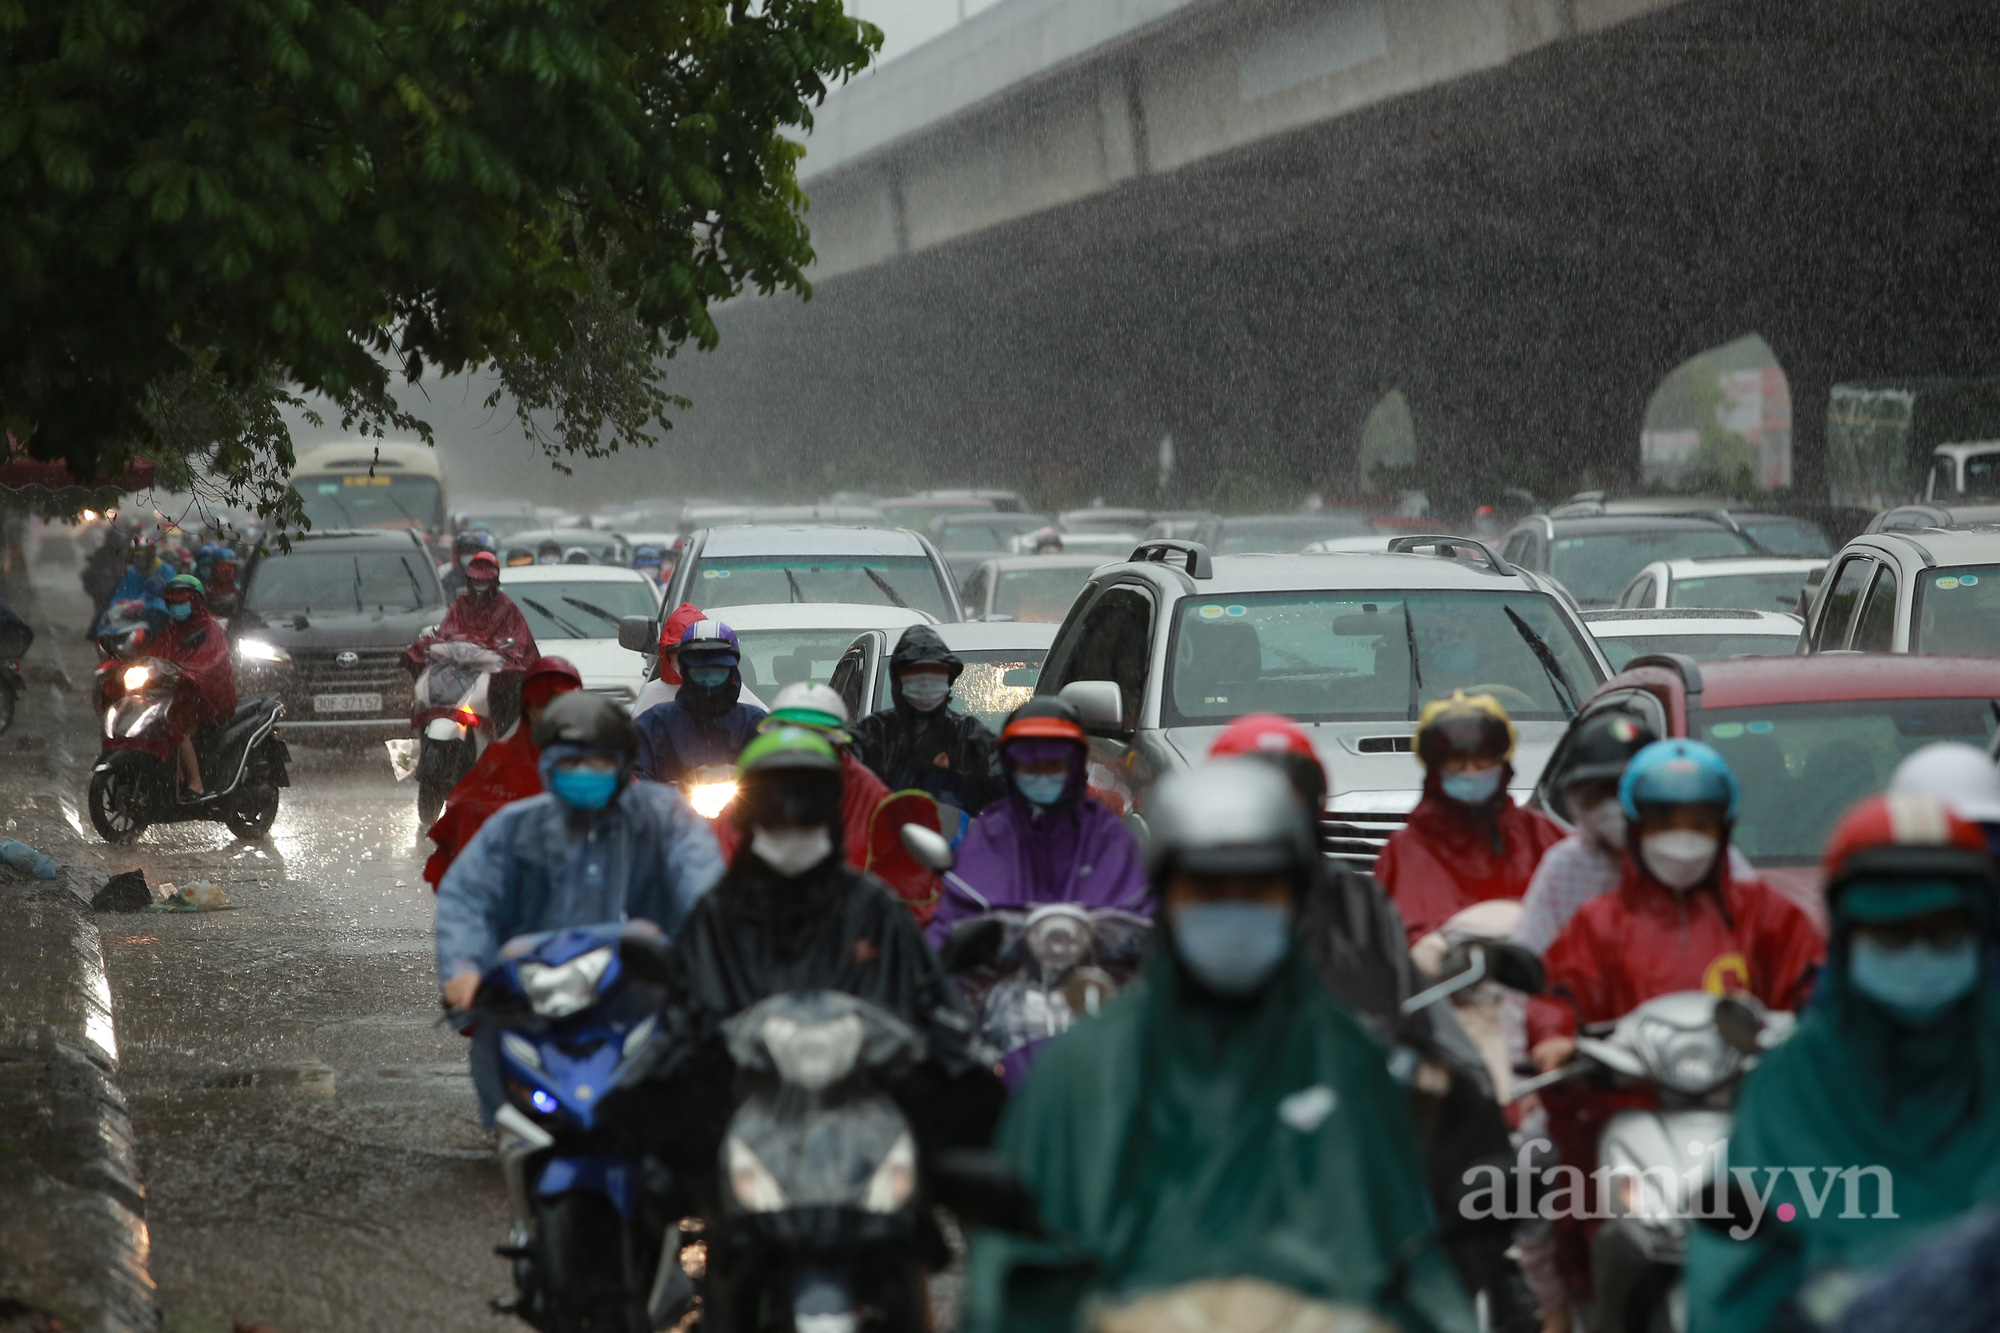 Đường phố ùn tắc, người Hà Nội vật lộn đi làm trong cơn mưa tầm tã - Ảnh 1.